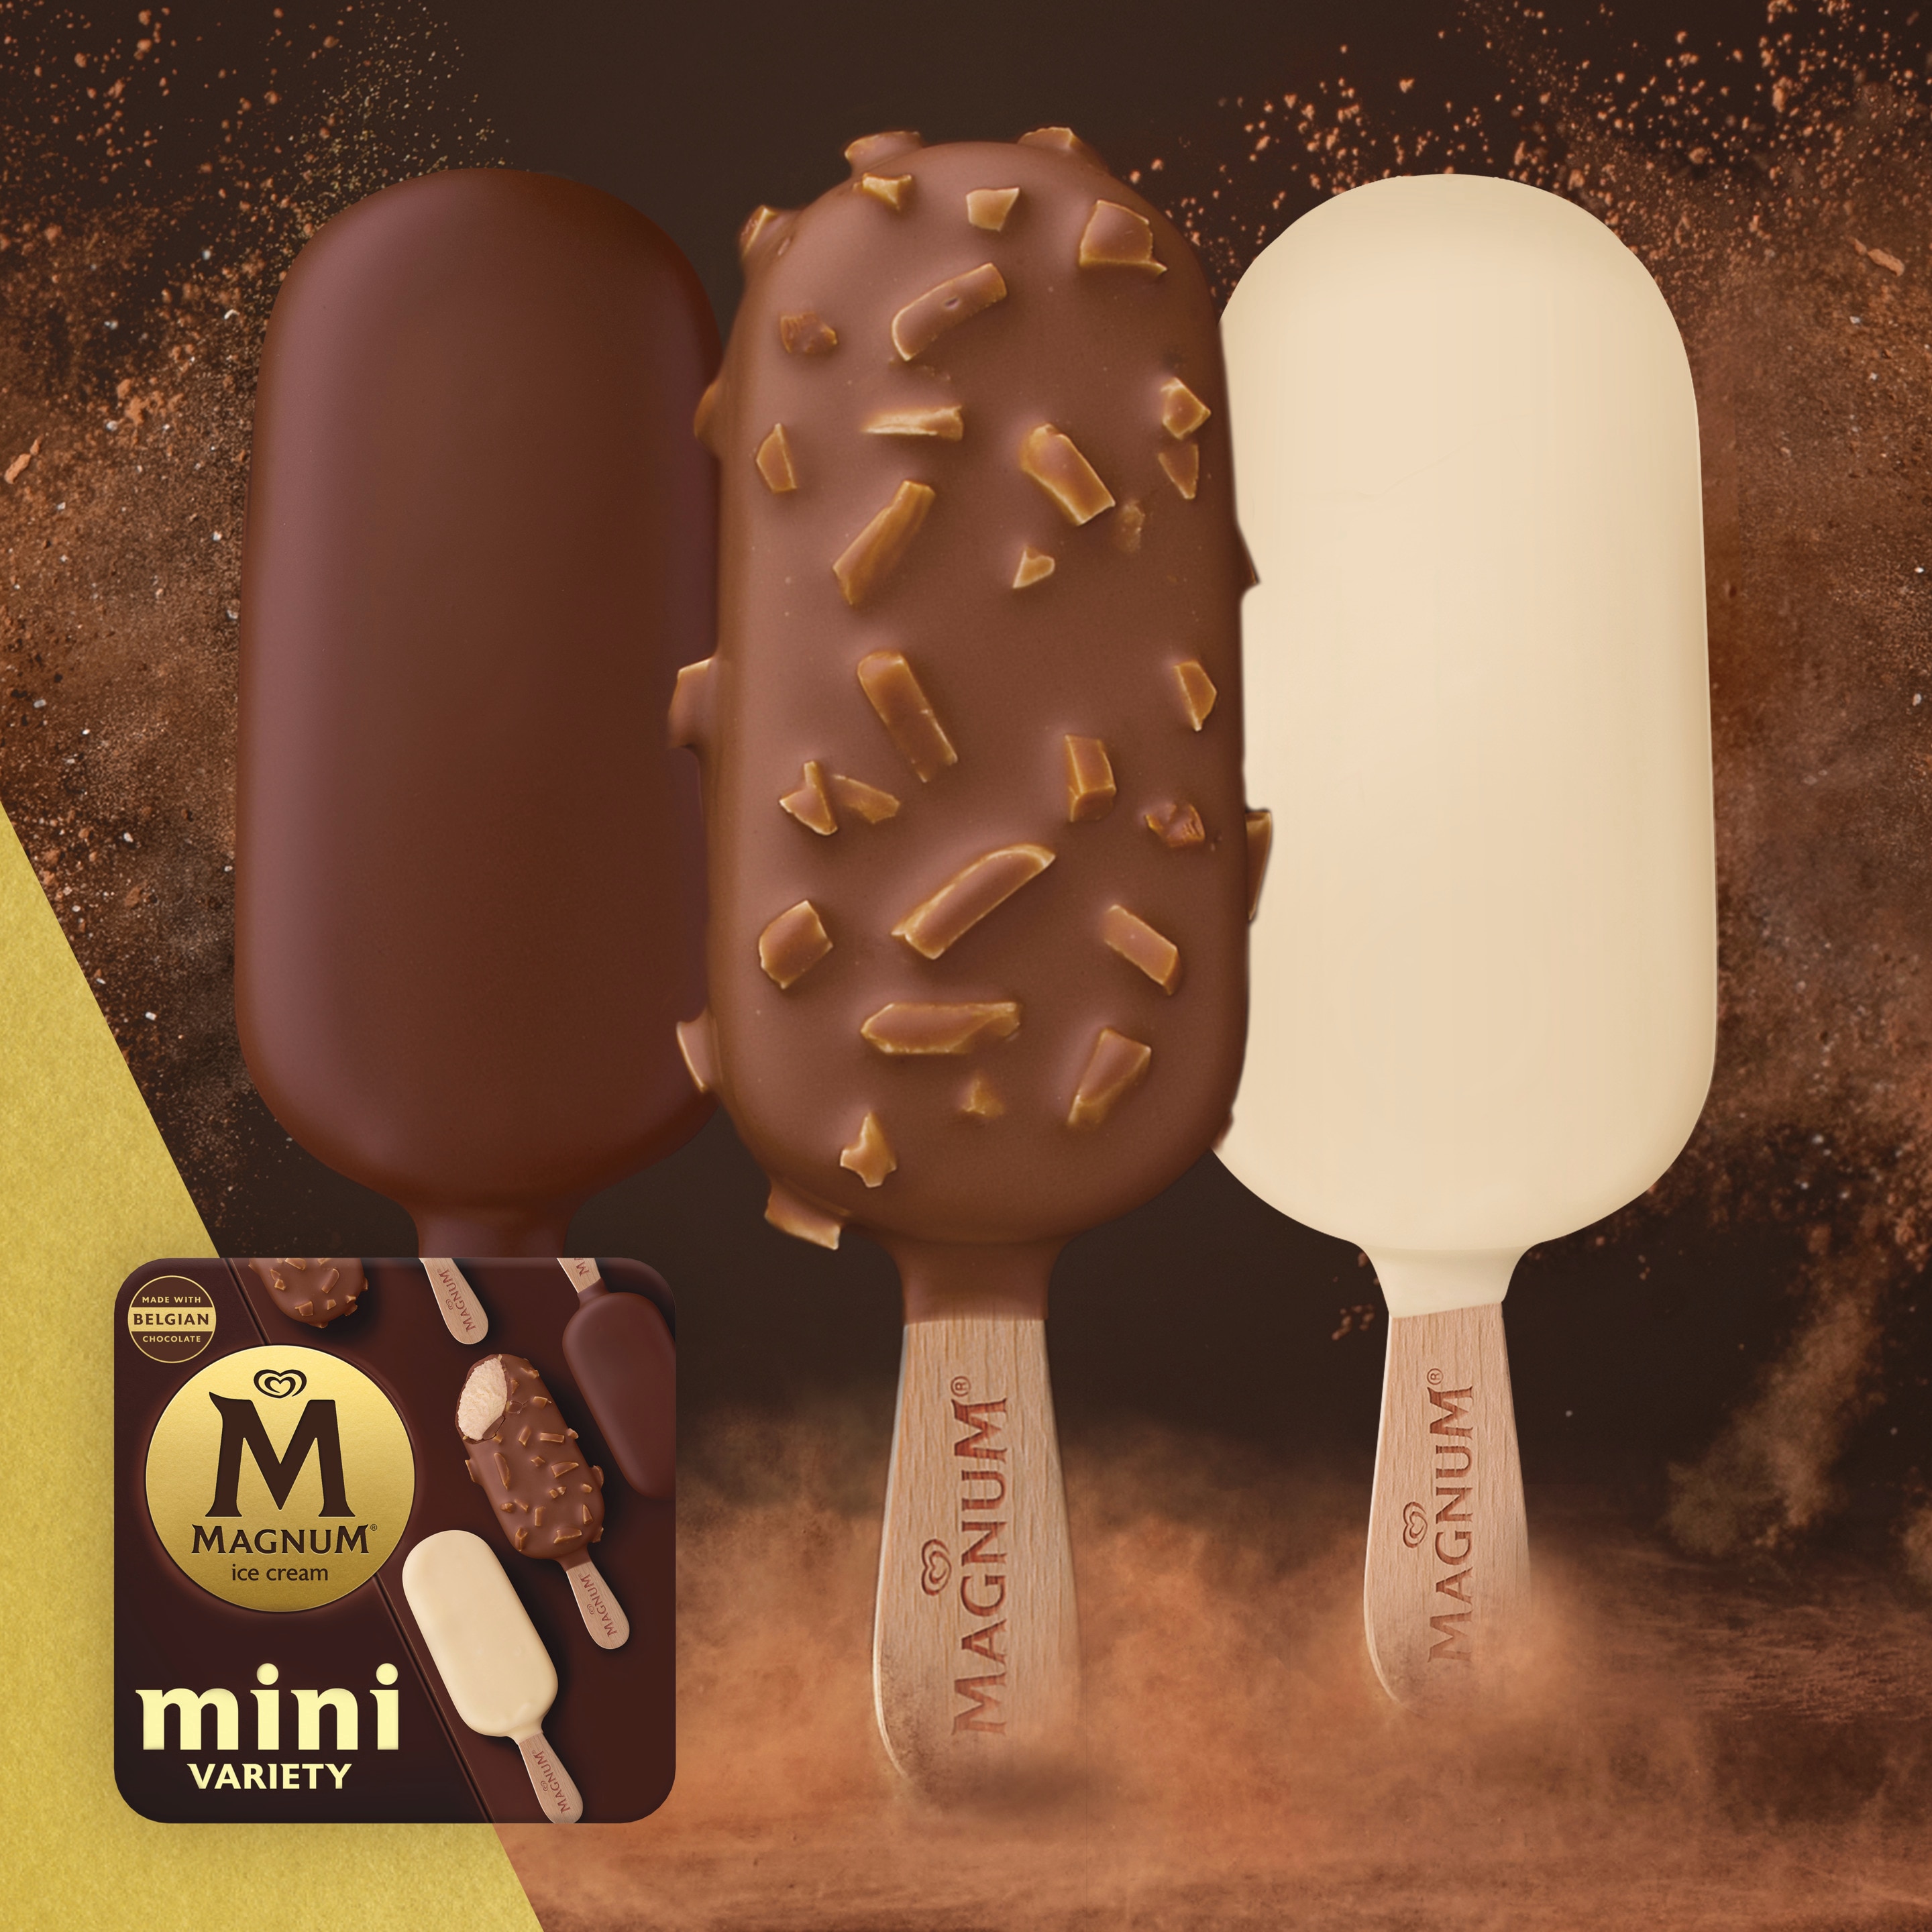 Mini Ice Cream Treat Variety Pack - Classic, Almond, & White